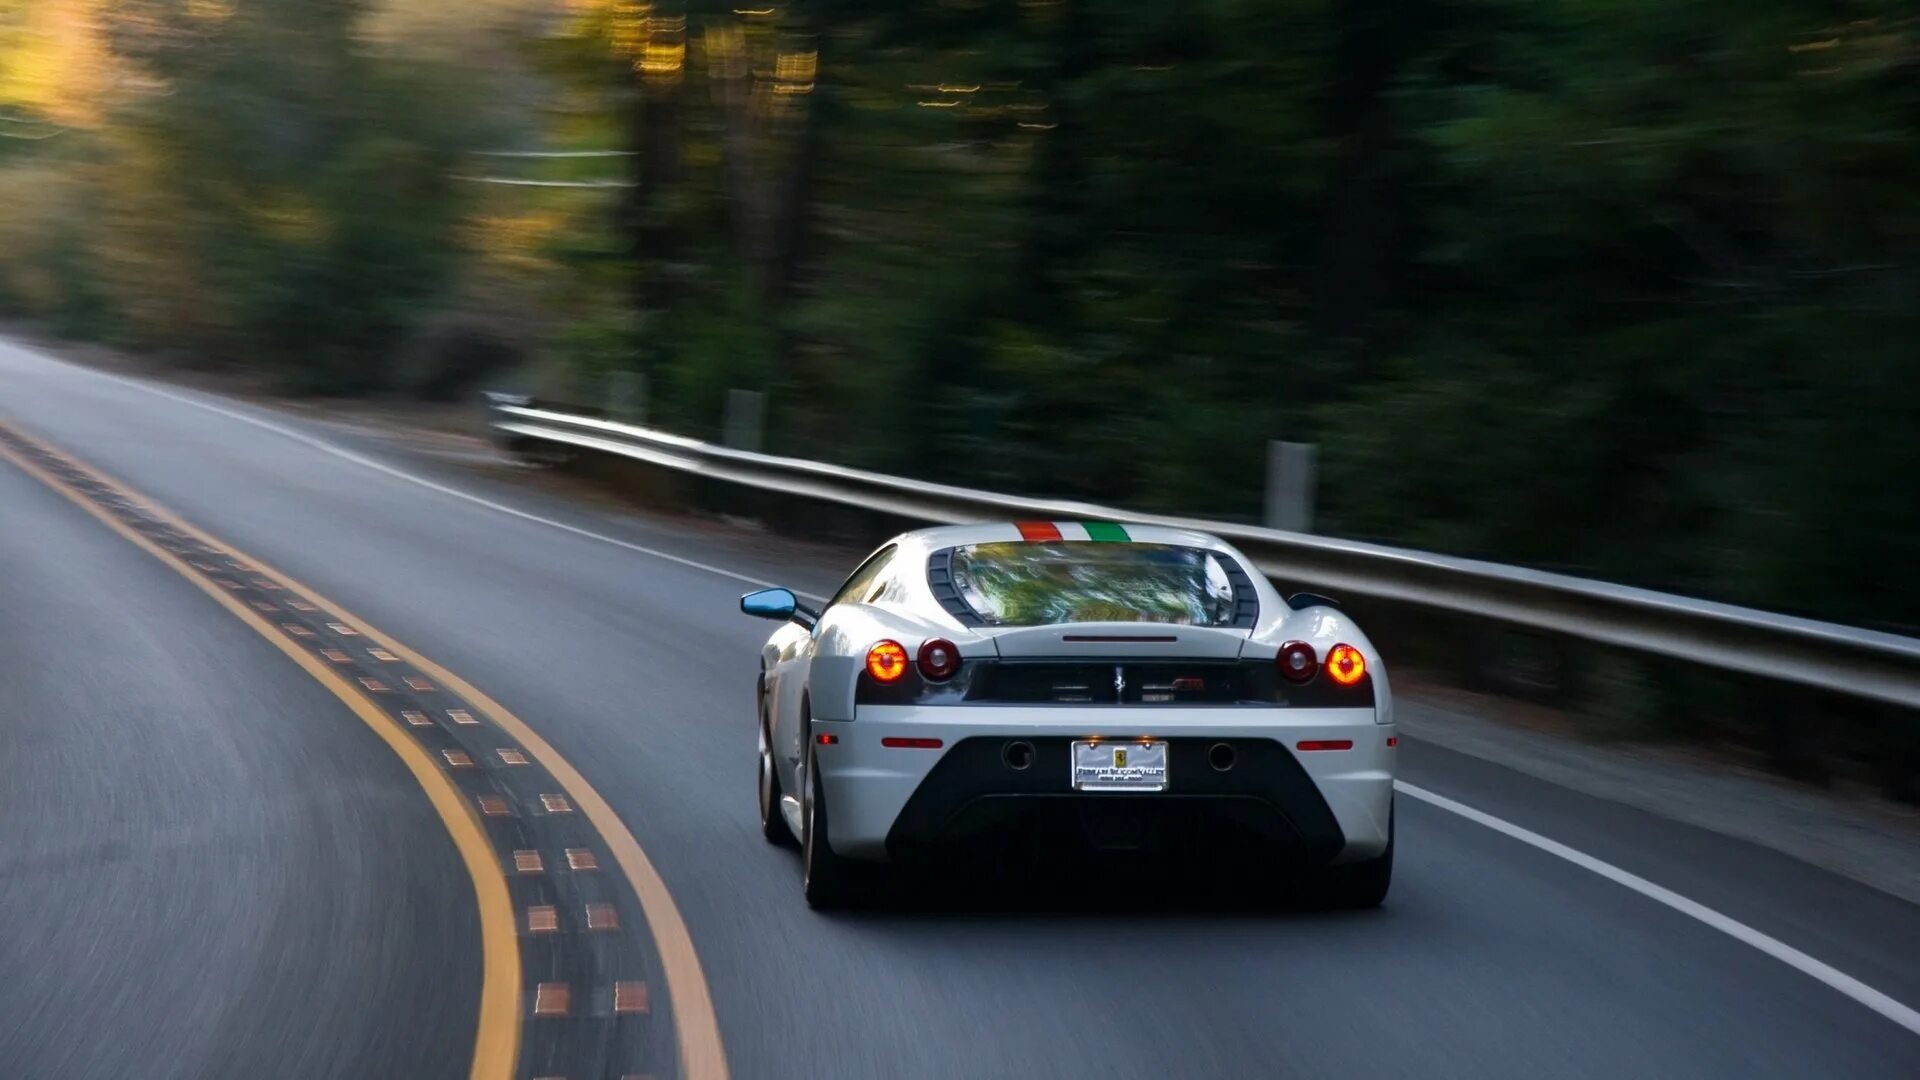 Машины едут и стреляют. Ferrari Scuderia Road. Машина на дороге. Автомобиль едет. Гоночные машины на трассе.